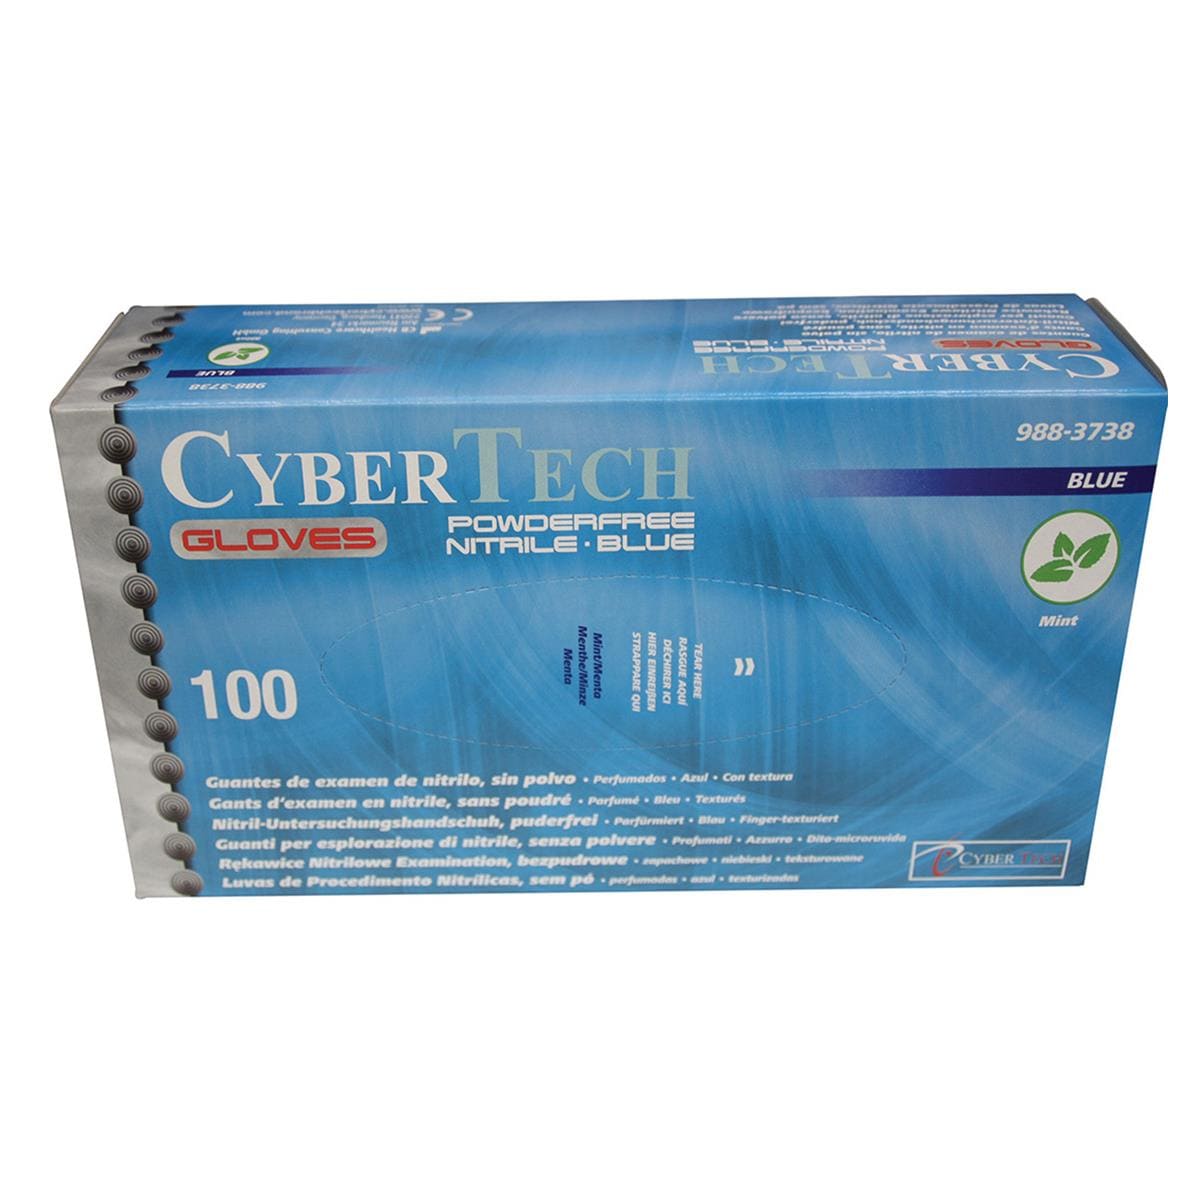 Cyber Gloves Nitrile Powder-Free Large 100pk